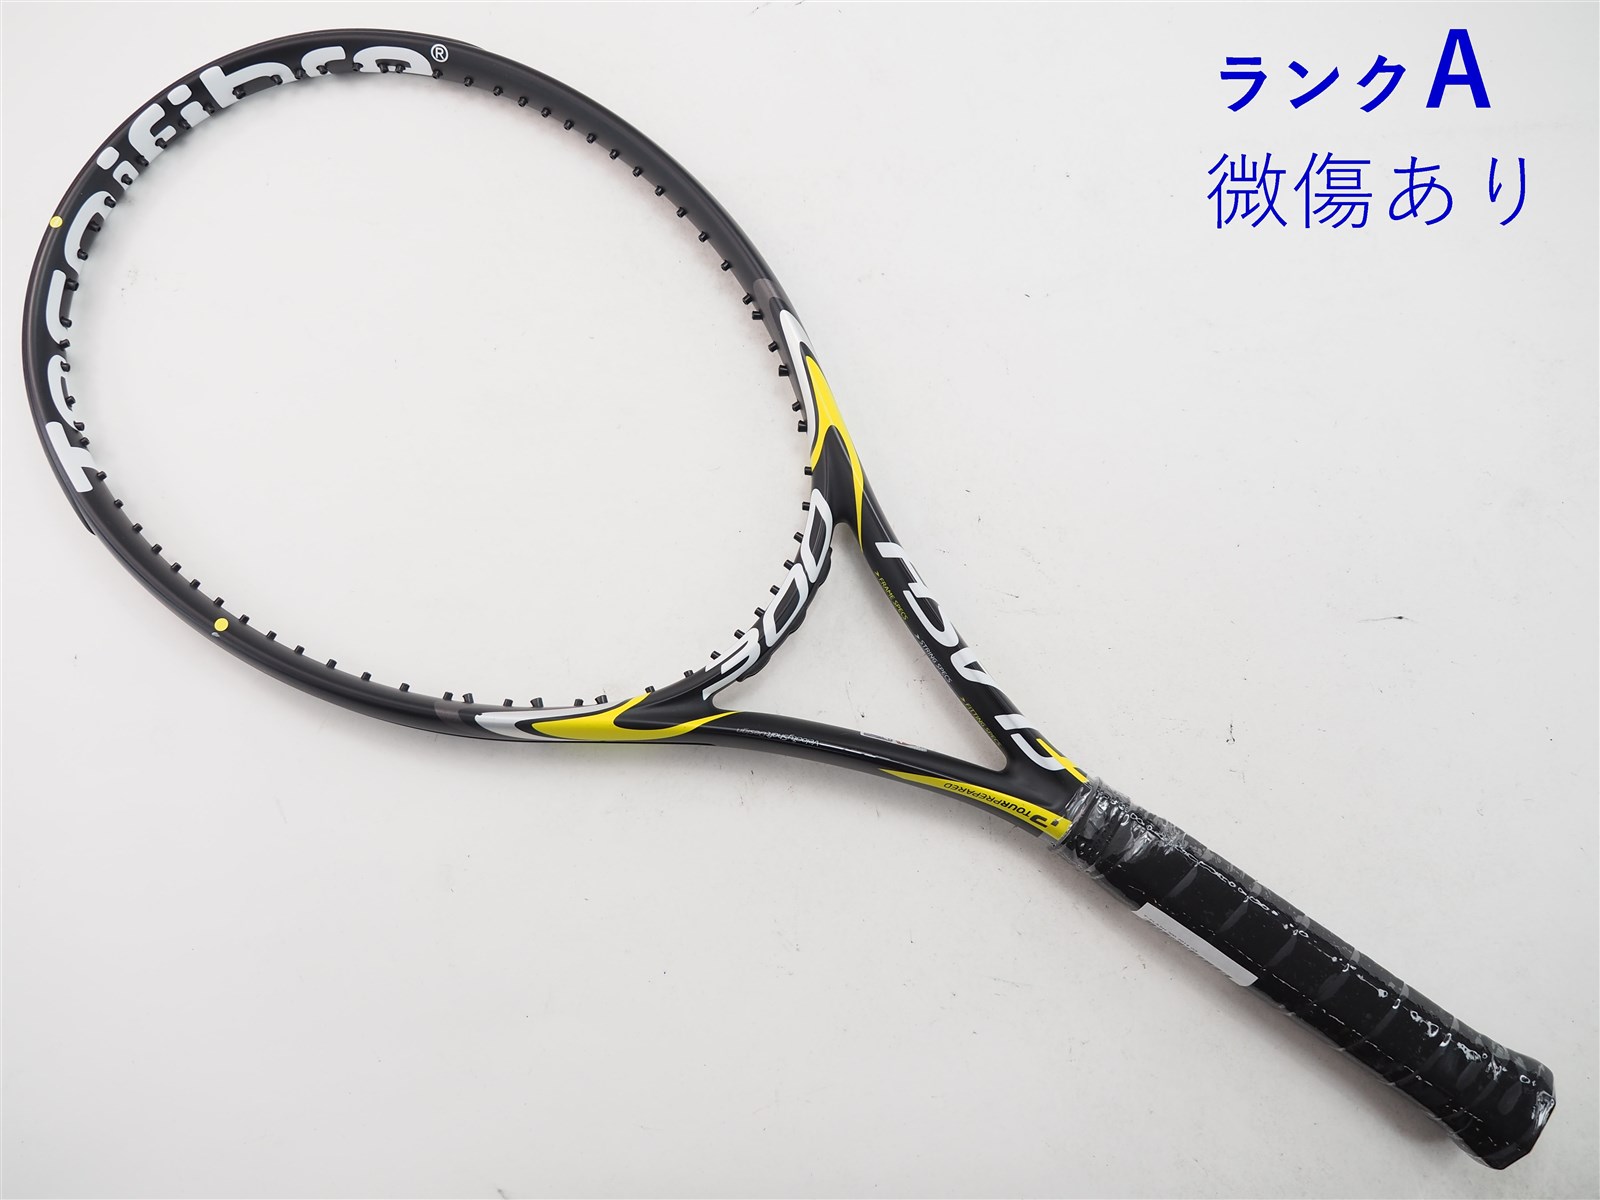 テニスラケット テクニファイバー ティーフラッシュ 300 2014年モデル